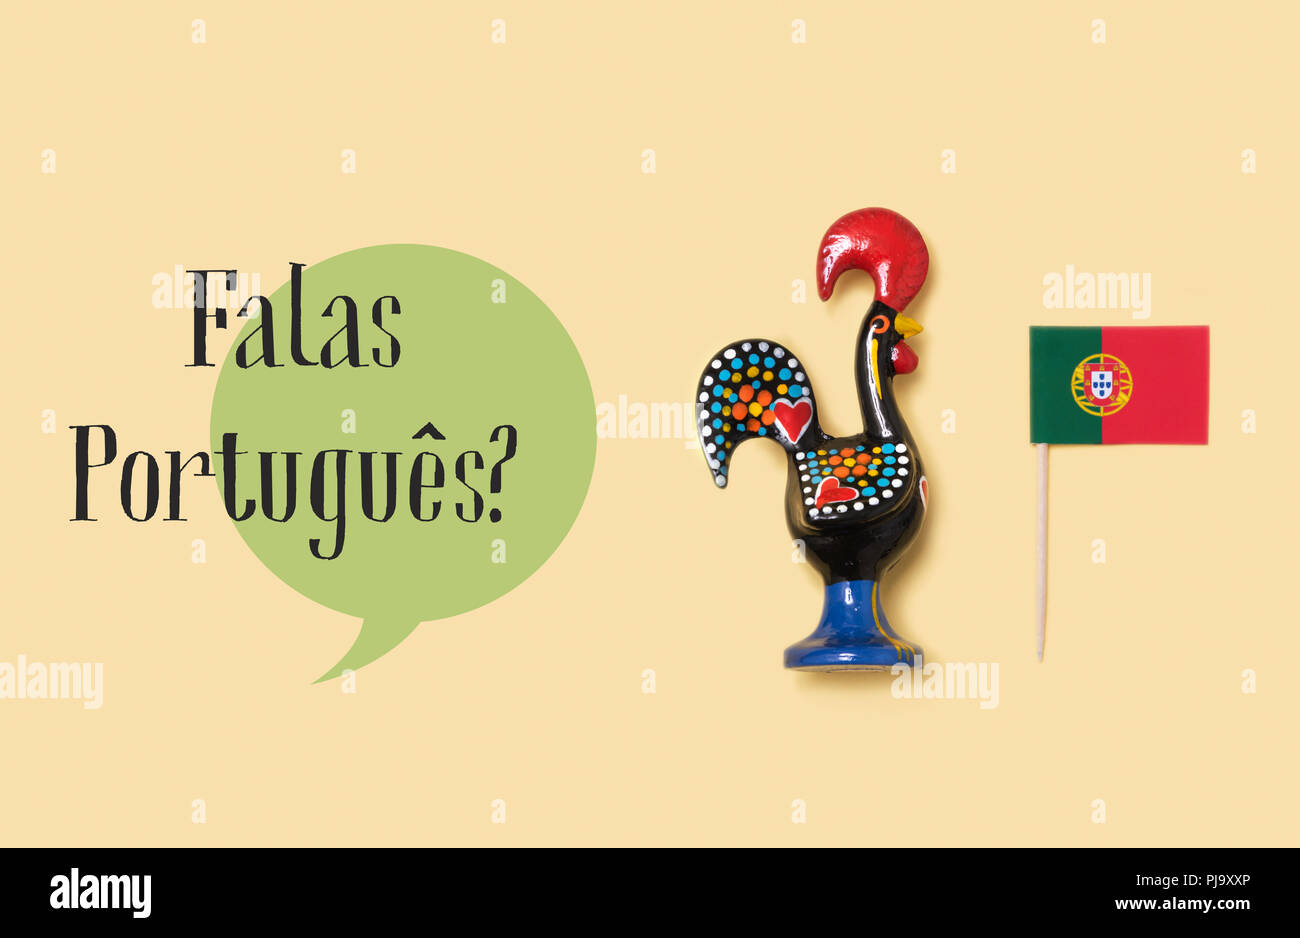 Un gallo di Barcelos, emblema di Portogallo, una bandiera del Portogallo e la questione falas portugues, si parlano portoghese? Scritto in portoghese, AG Foto Stock